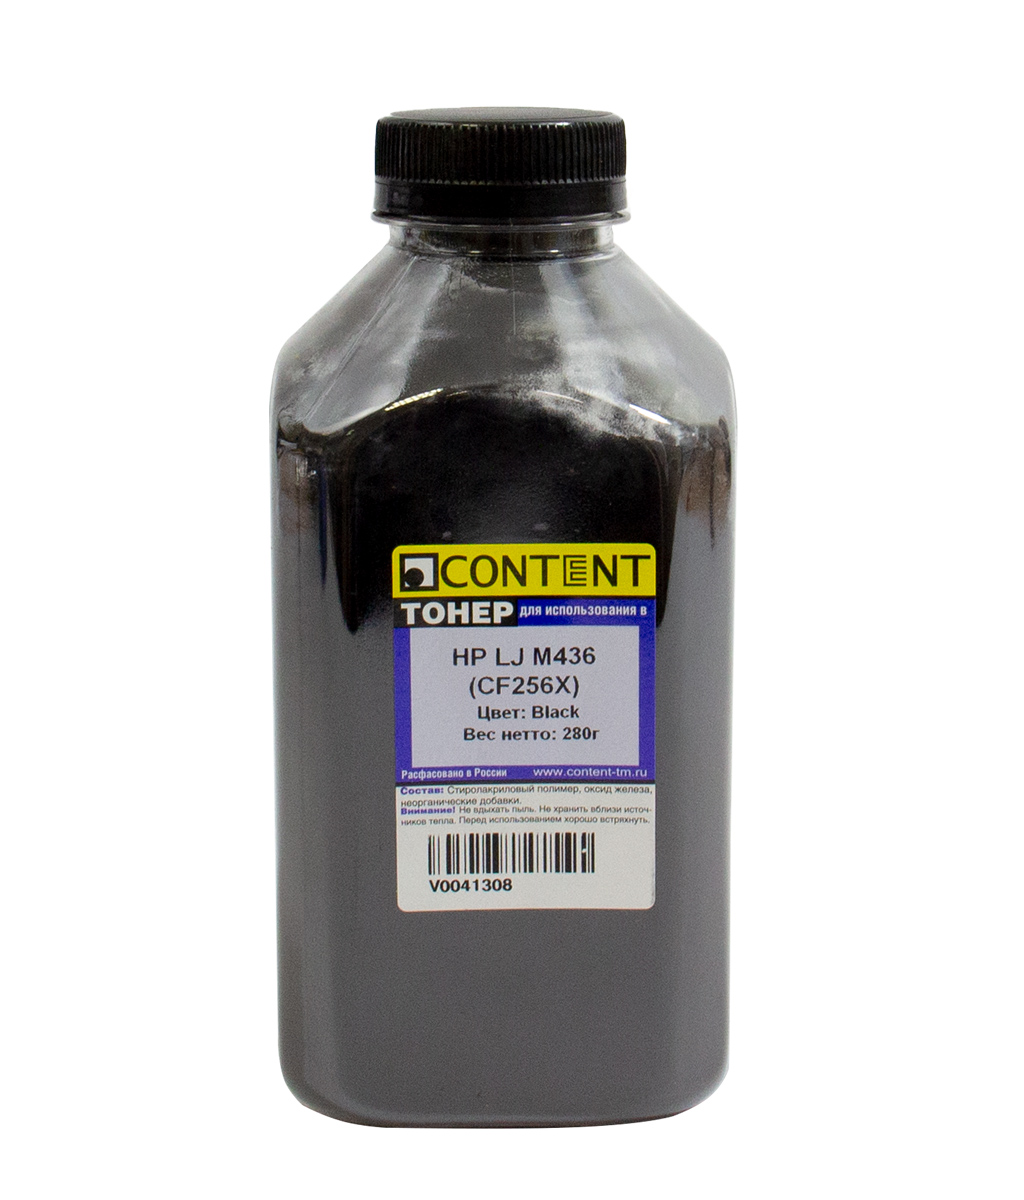 Тонер совместимый Тонер Content, бутыль 280 г, черный, совместимый для LJ M436 (V0041308)